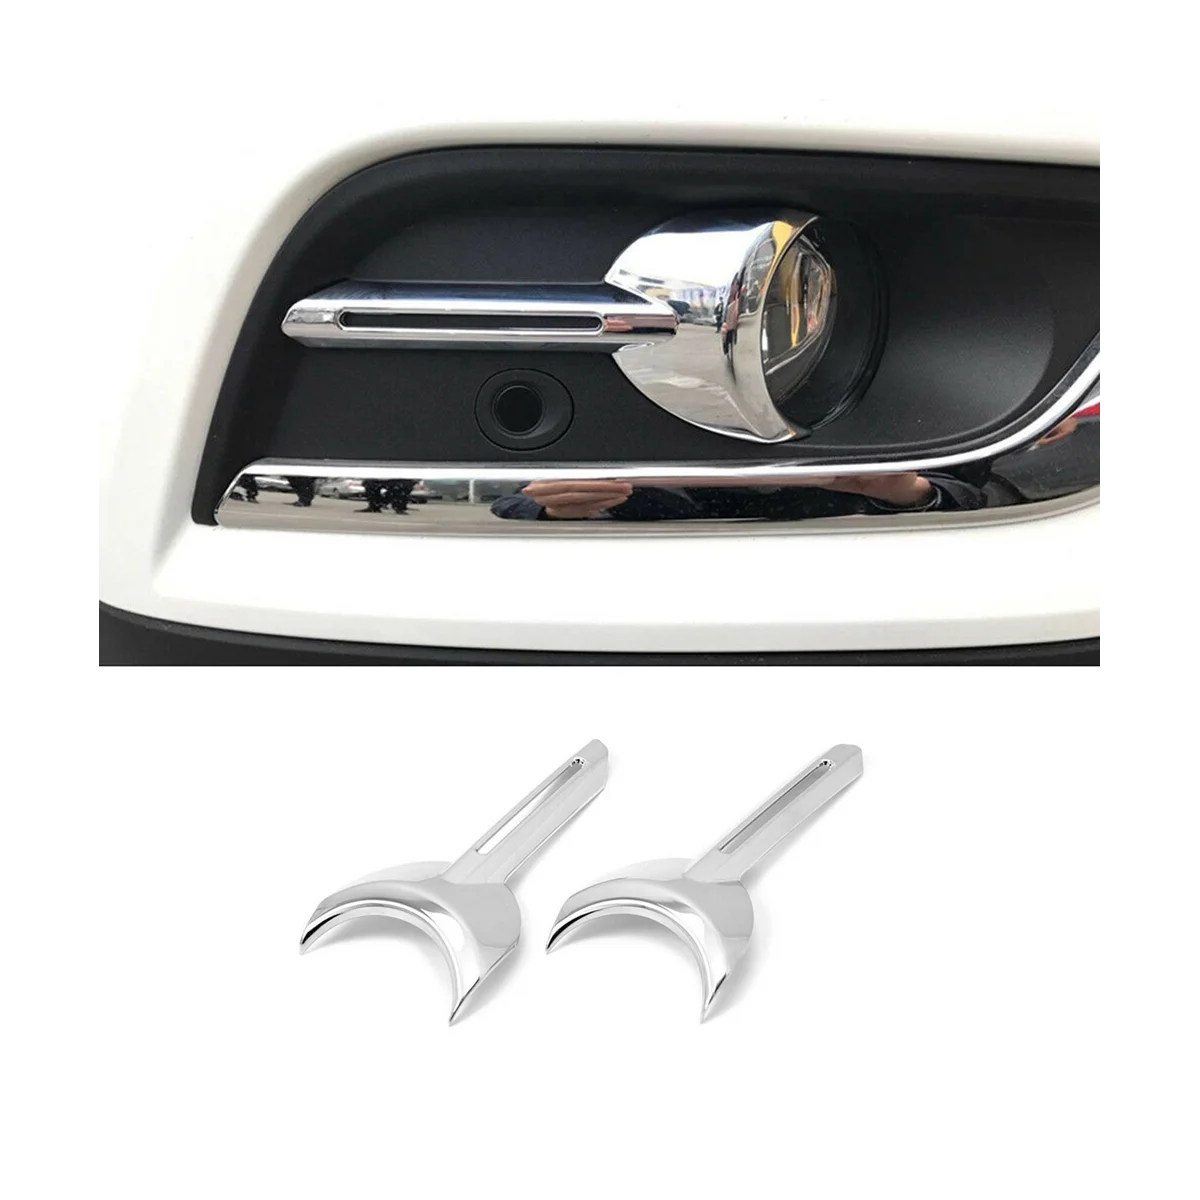 

For Renault Koleos 2017-2020 Car Front Fog Light Lamp Cover Frame Trim Bezel Decoration Accessories